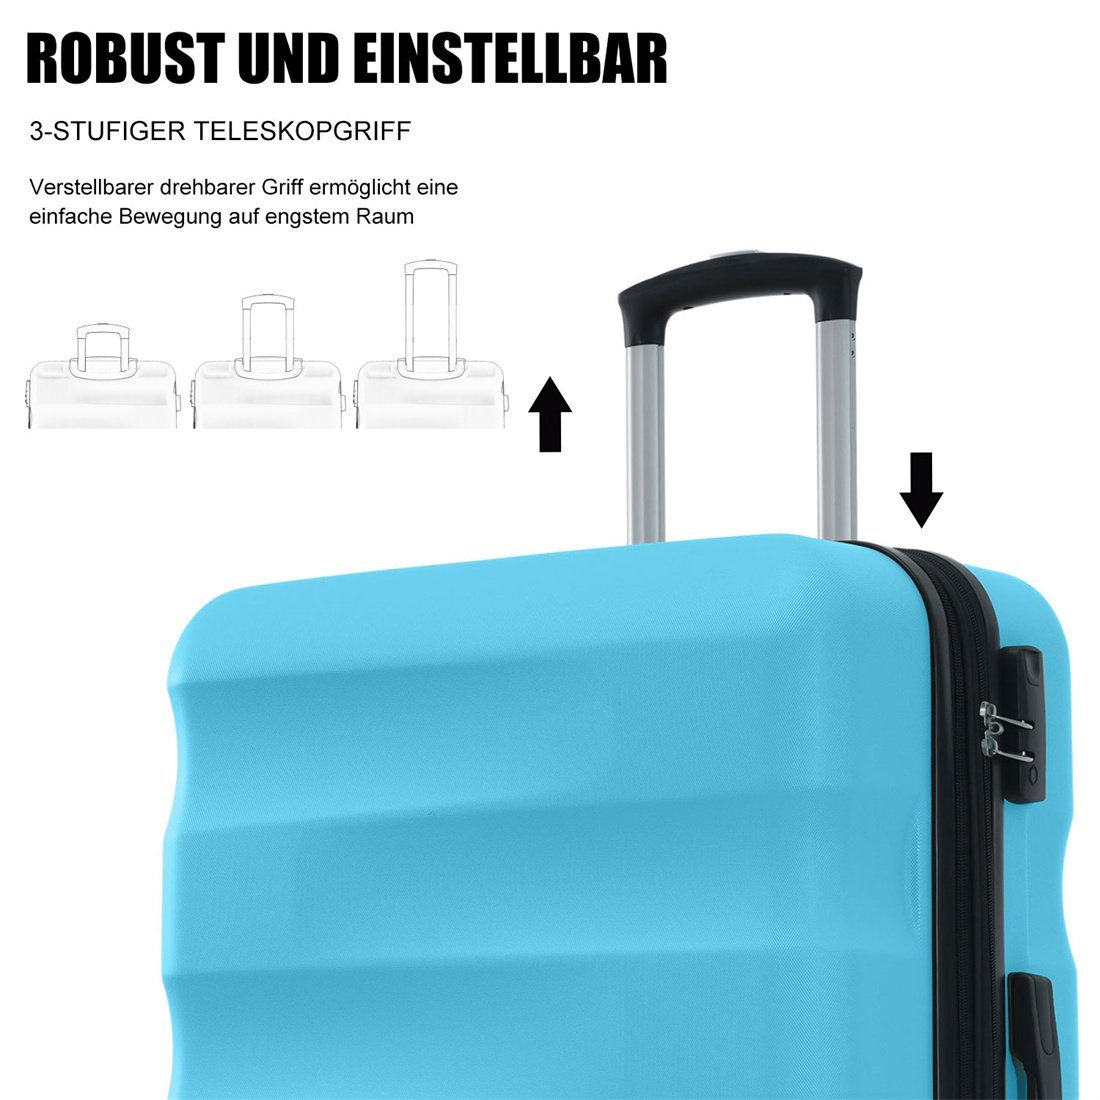 DÖRÖY Koffer ABS-Material azurblau Hartschalen-Koffer, Reisekoffer, 69*44.5*26.5cm